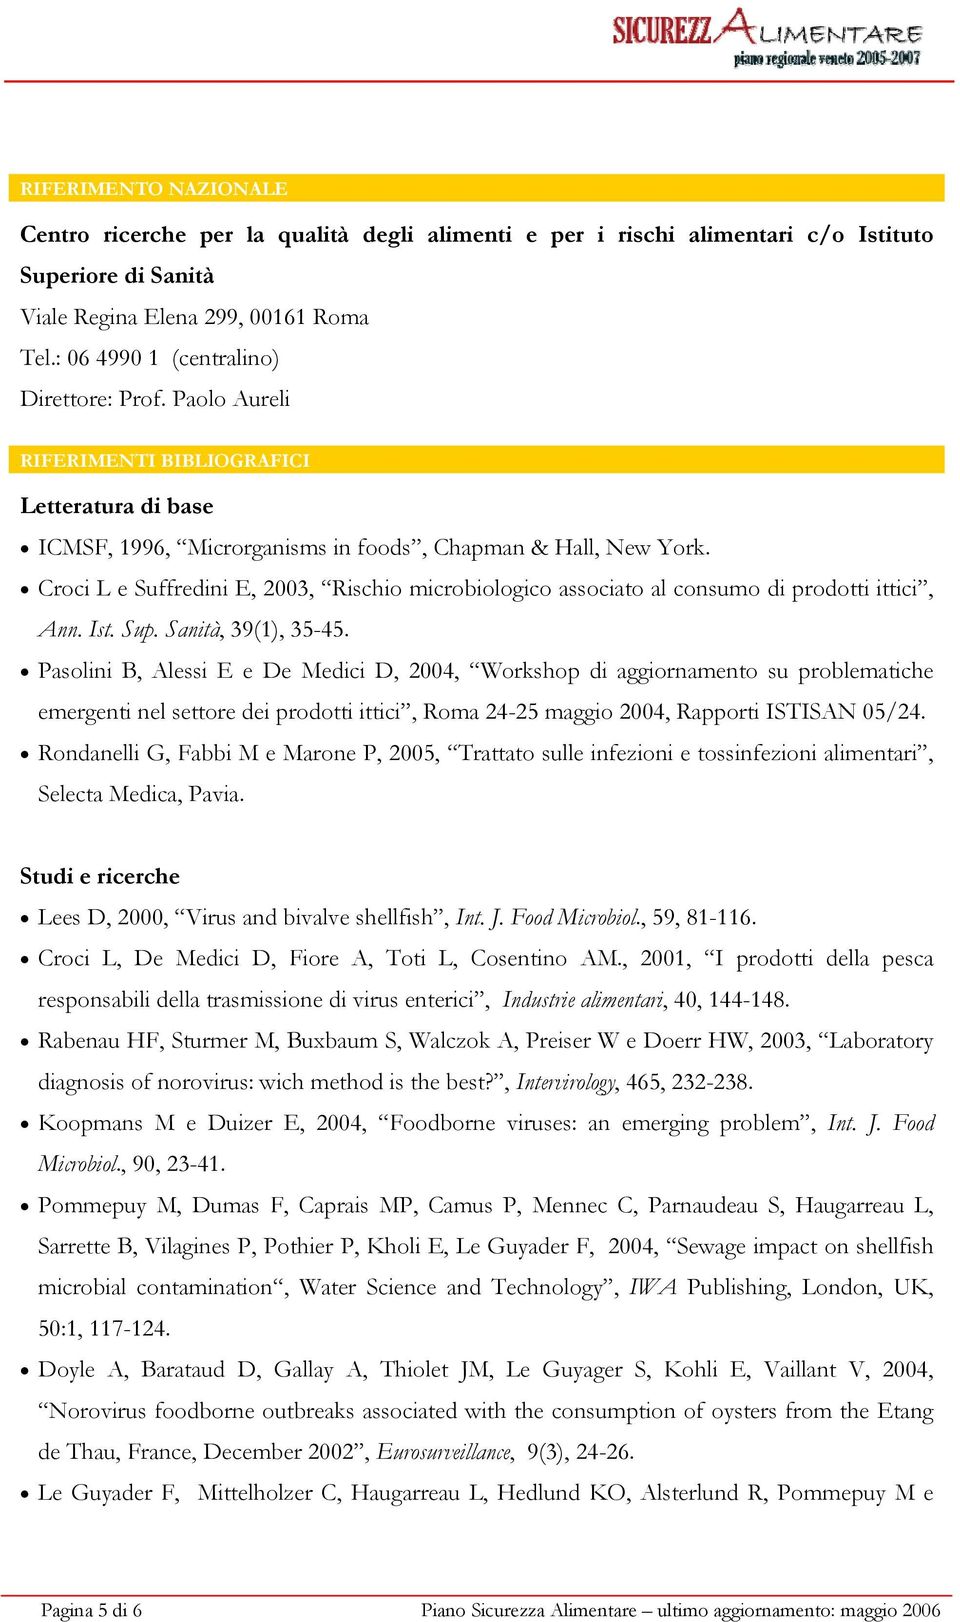 Croci L e Suffredini E, 2003, Rischio microbiologico associato al consumo di prodotti ittici, Ann. Ist. Sup. Sanità, 39(1), 35-45.